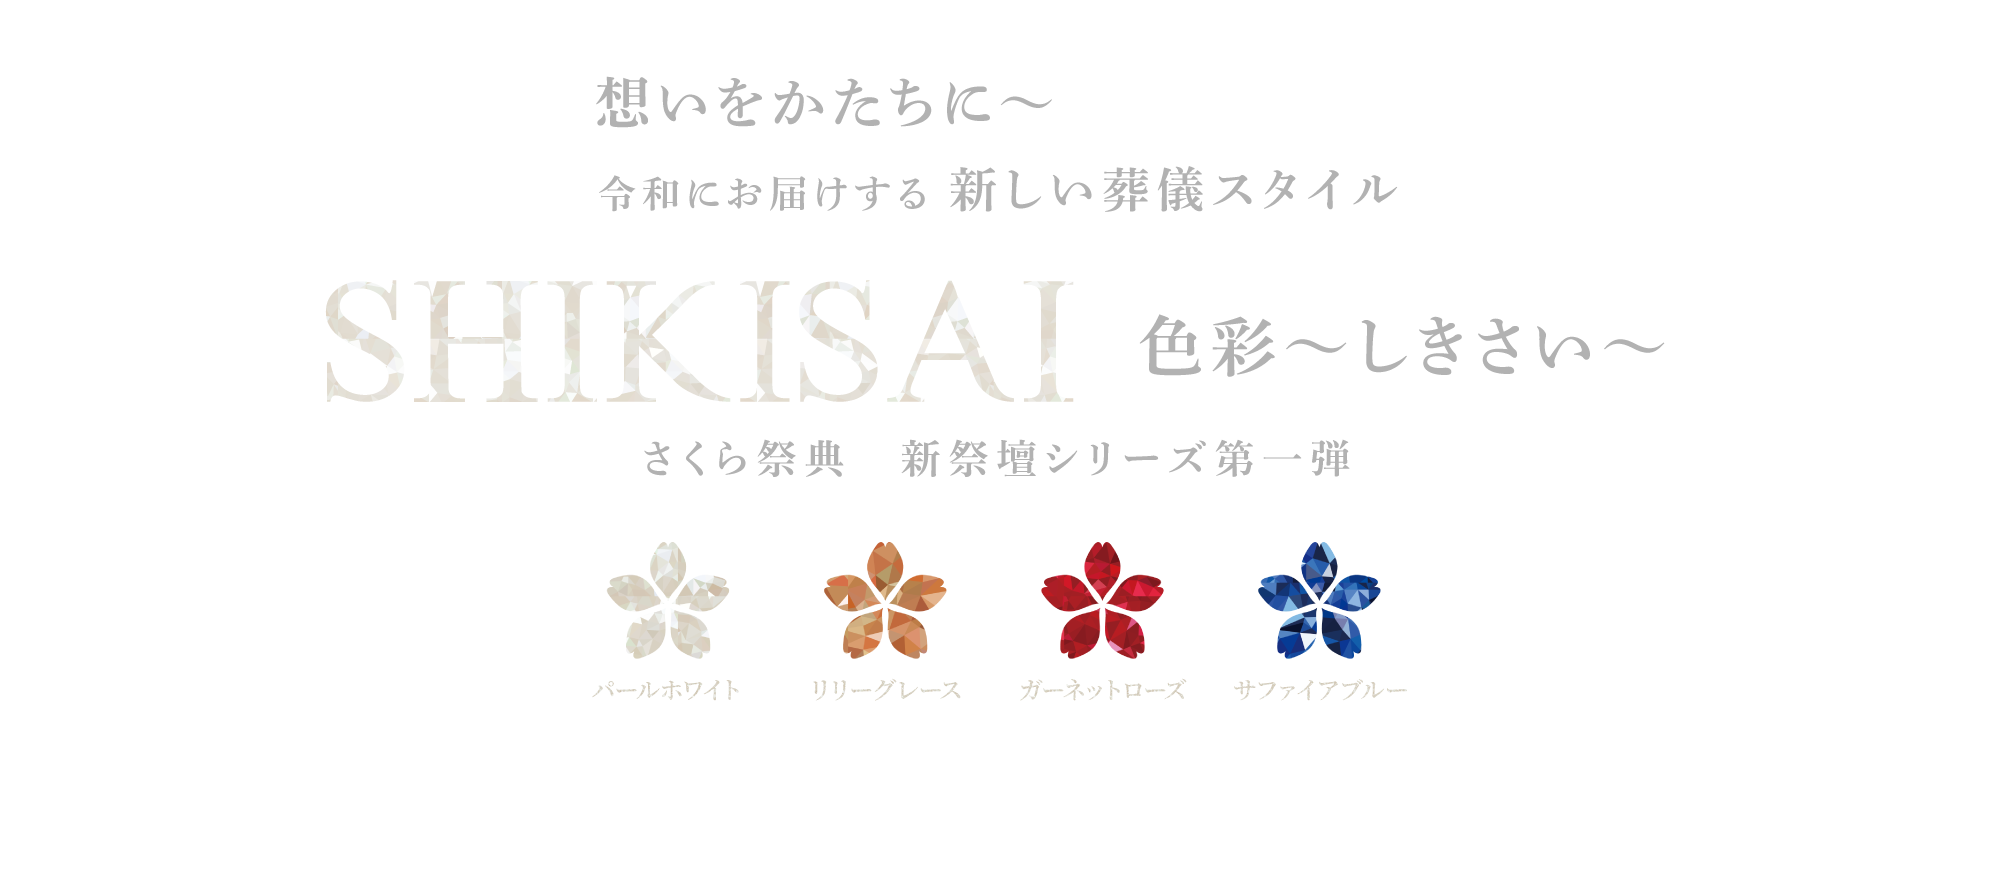 お得なオリジナルプラン　令和にお届けする 新しい葬儀スタイル「SHIKISAI～しきさい～」さくら祭典　新祭壇シリーズ第一弾